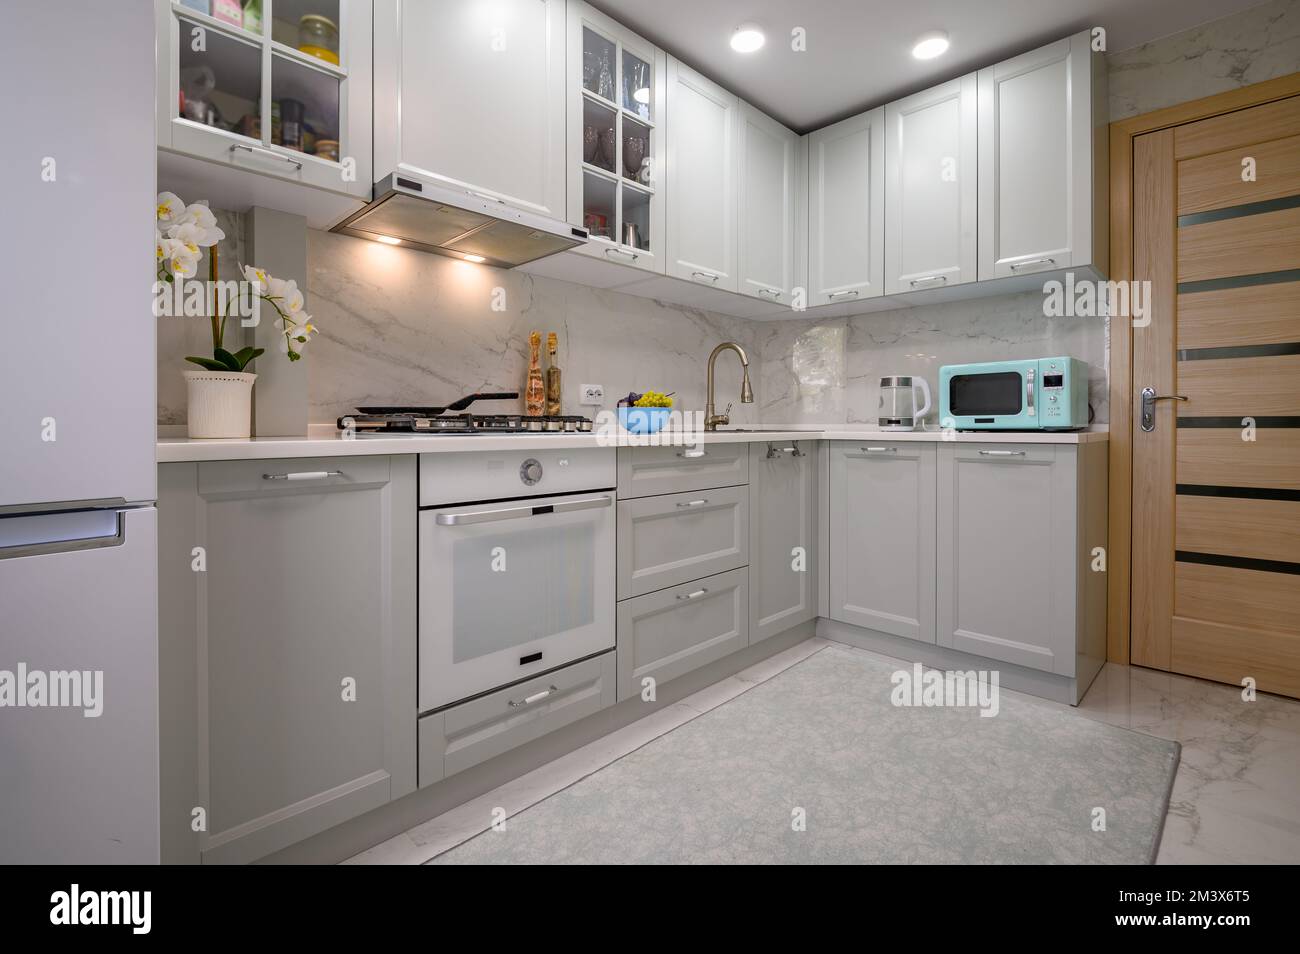 Hellgrau, neue, moderne, gut gestaltete Kücheneinrichtung Stockfoto